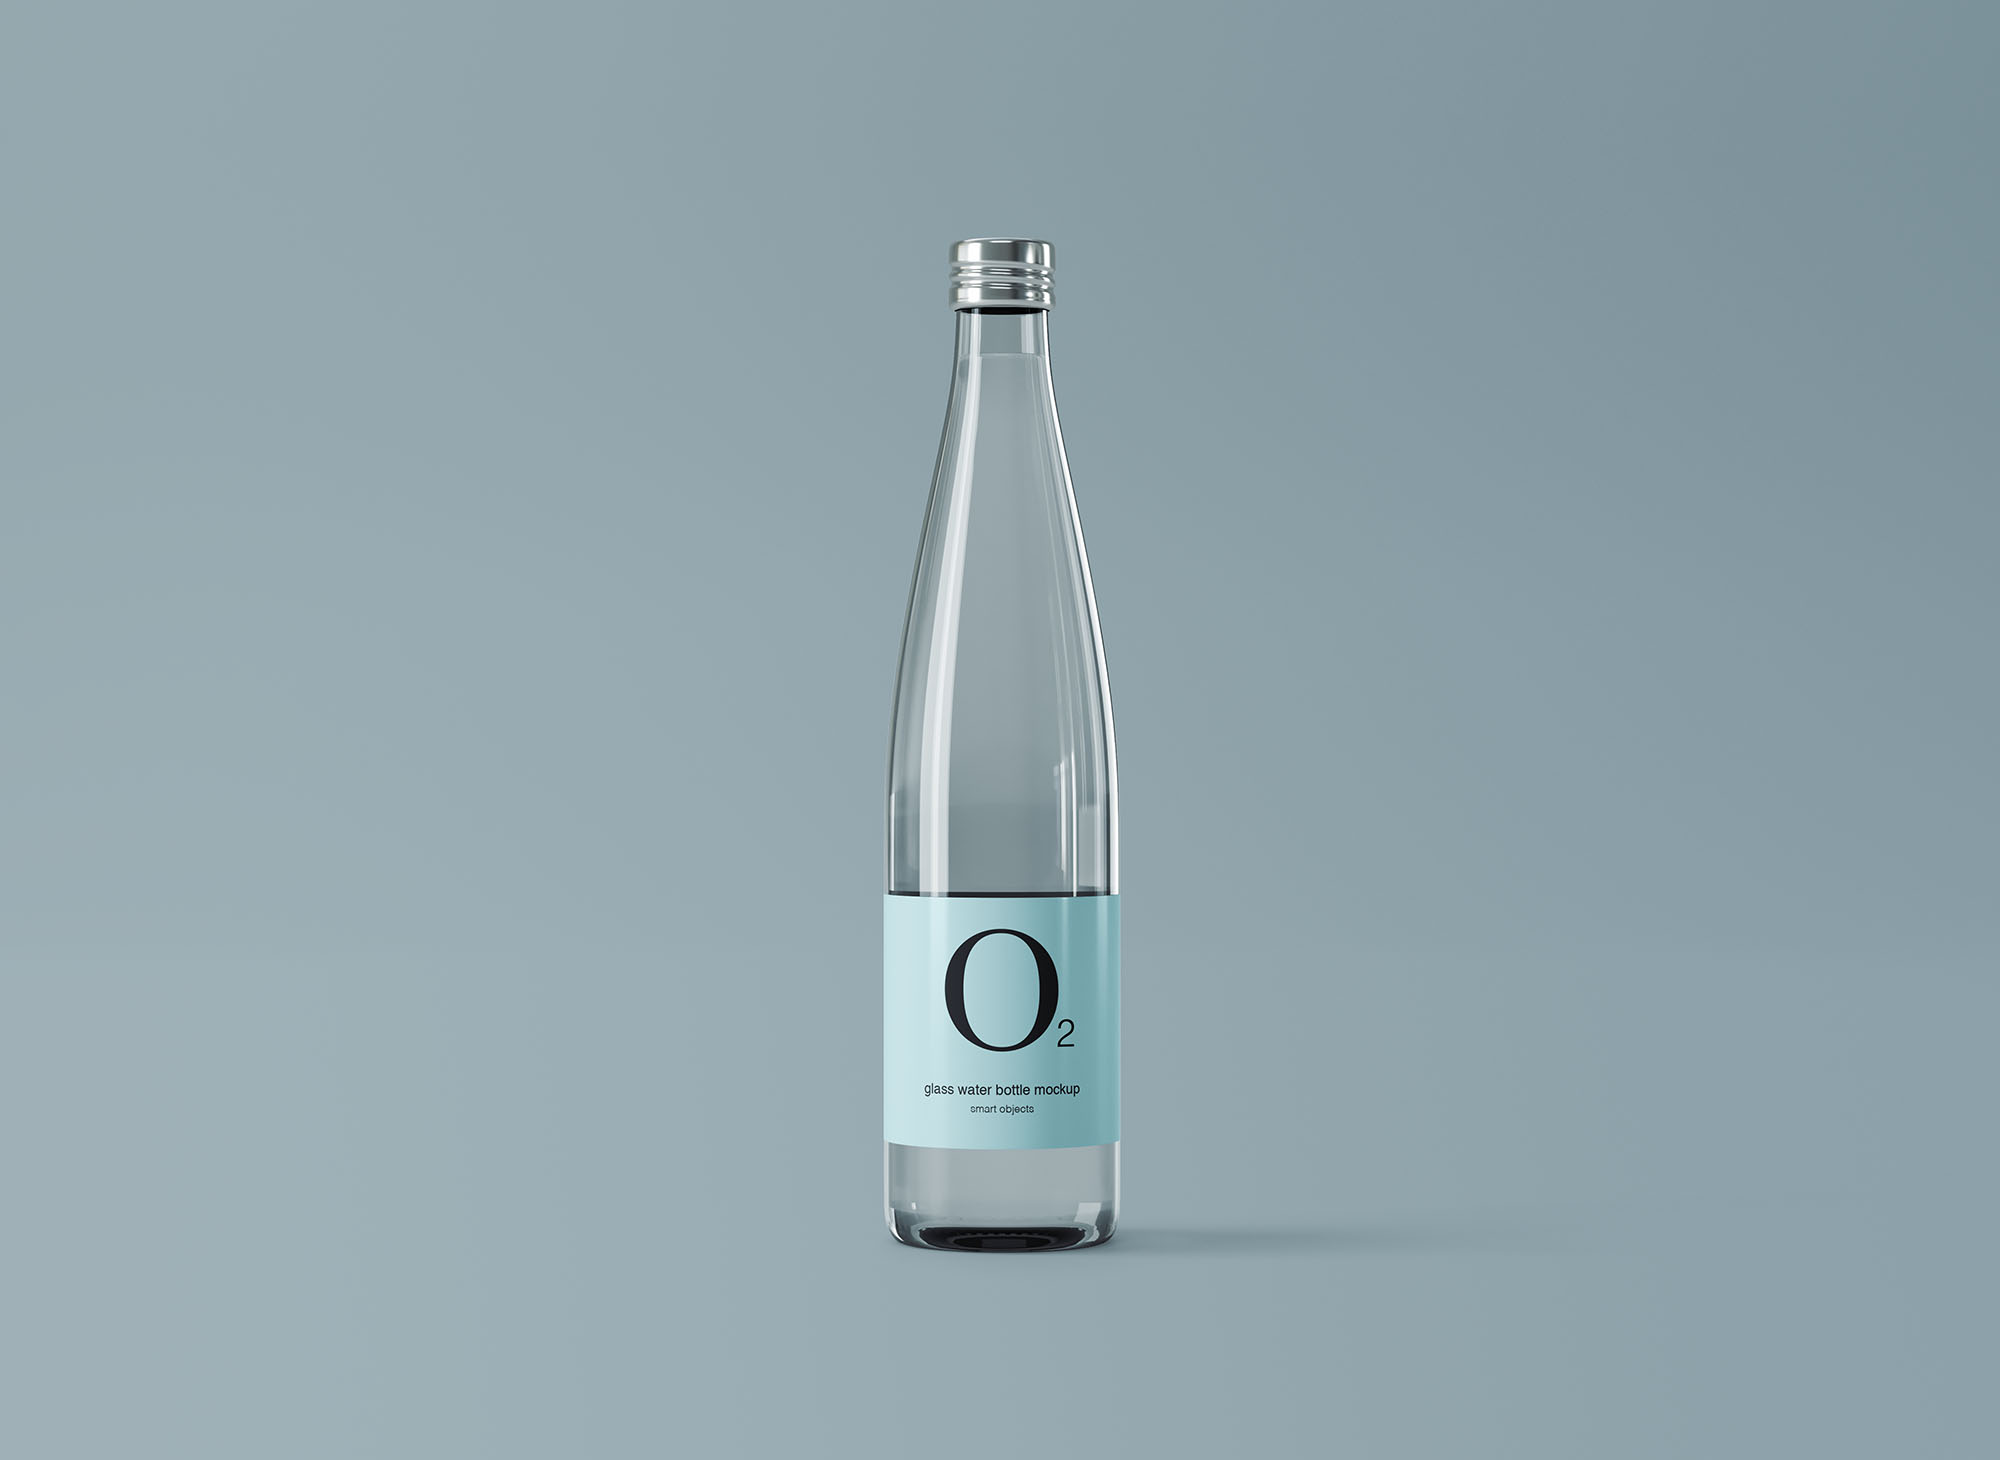 极简设计玻璃纯净水矿泉水瓶外观设计图样机 Minimal Glass Water Bottle Mockup设计素材模板